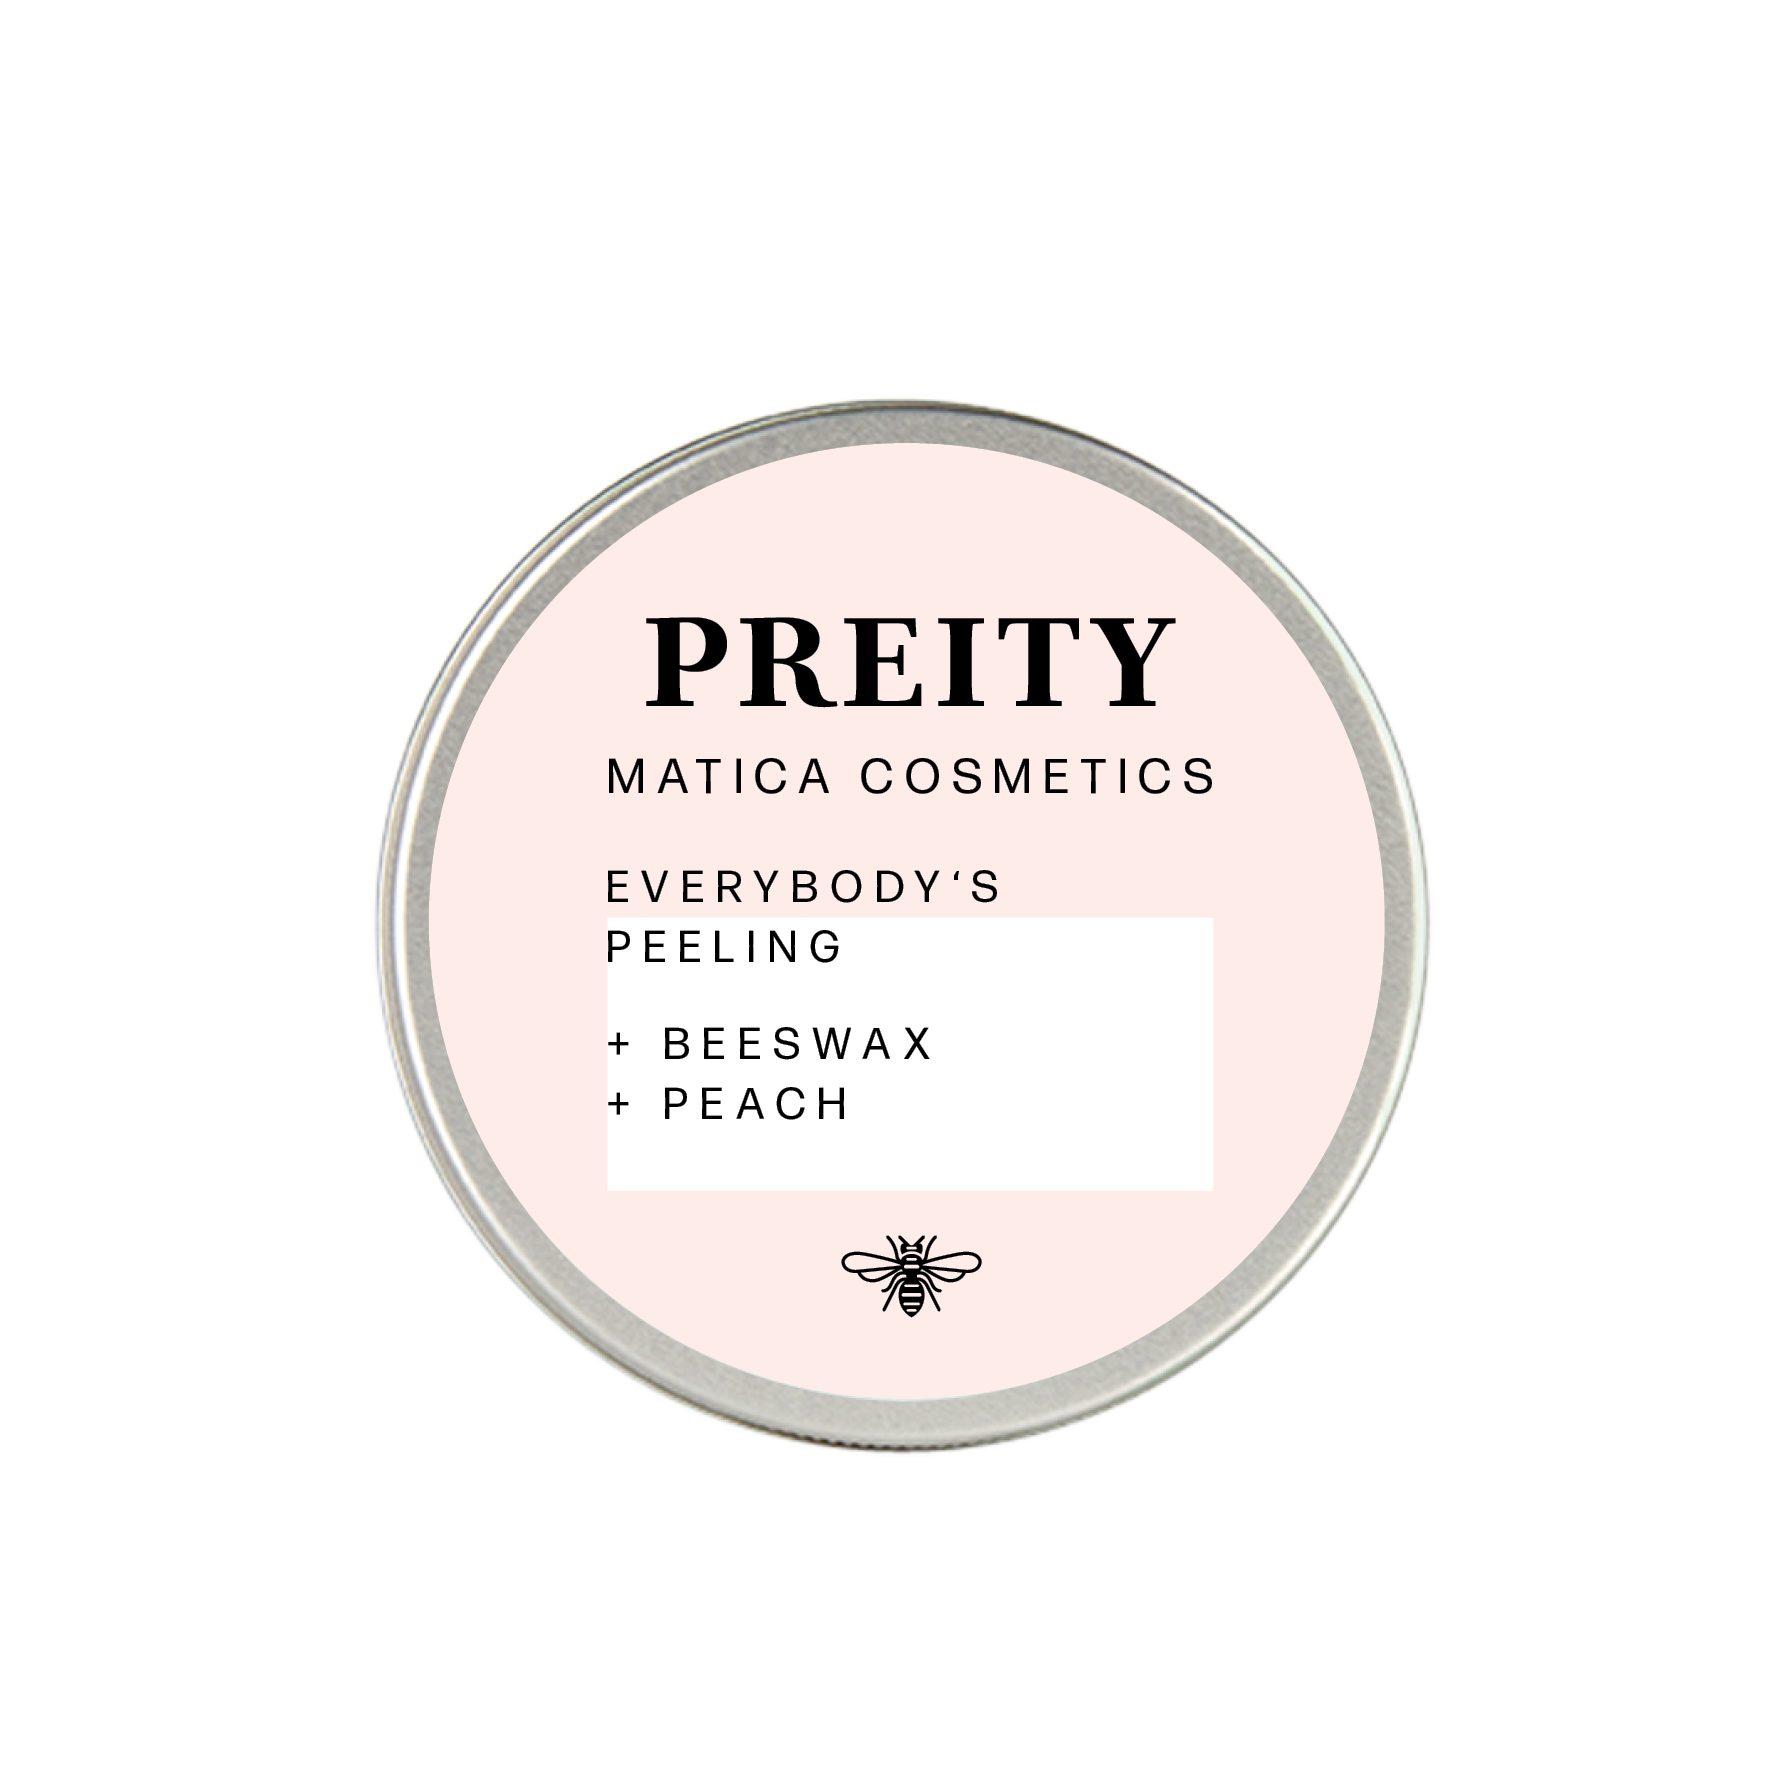 Pfirsich Scrub ; - Preity Cosmetics Peeling Körperpeeling Body Matica